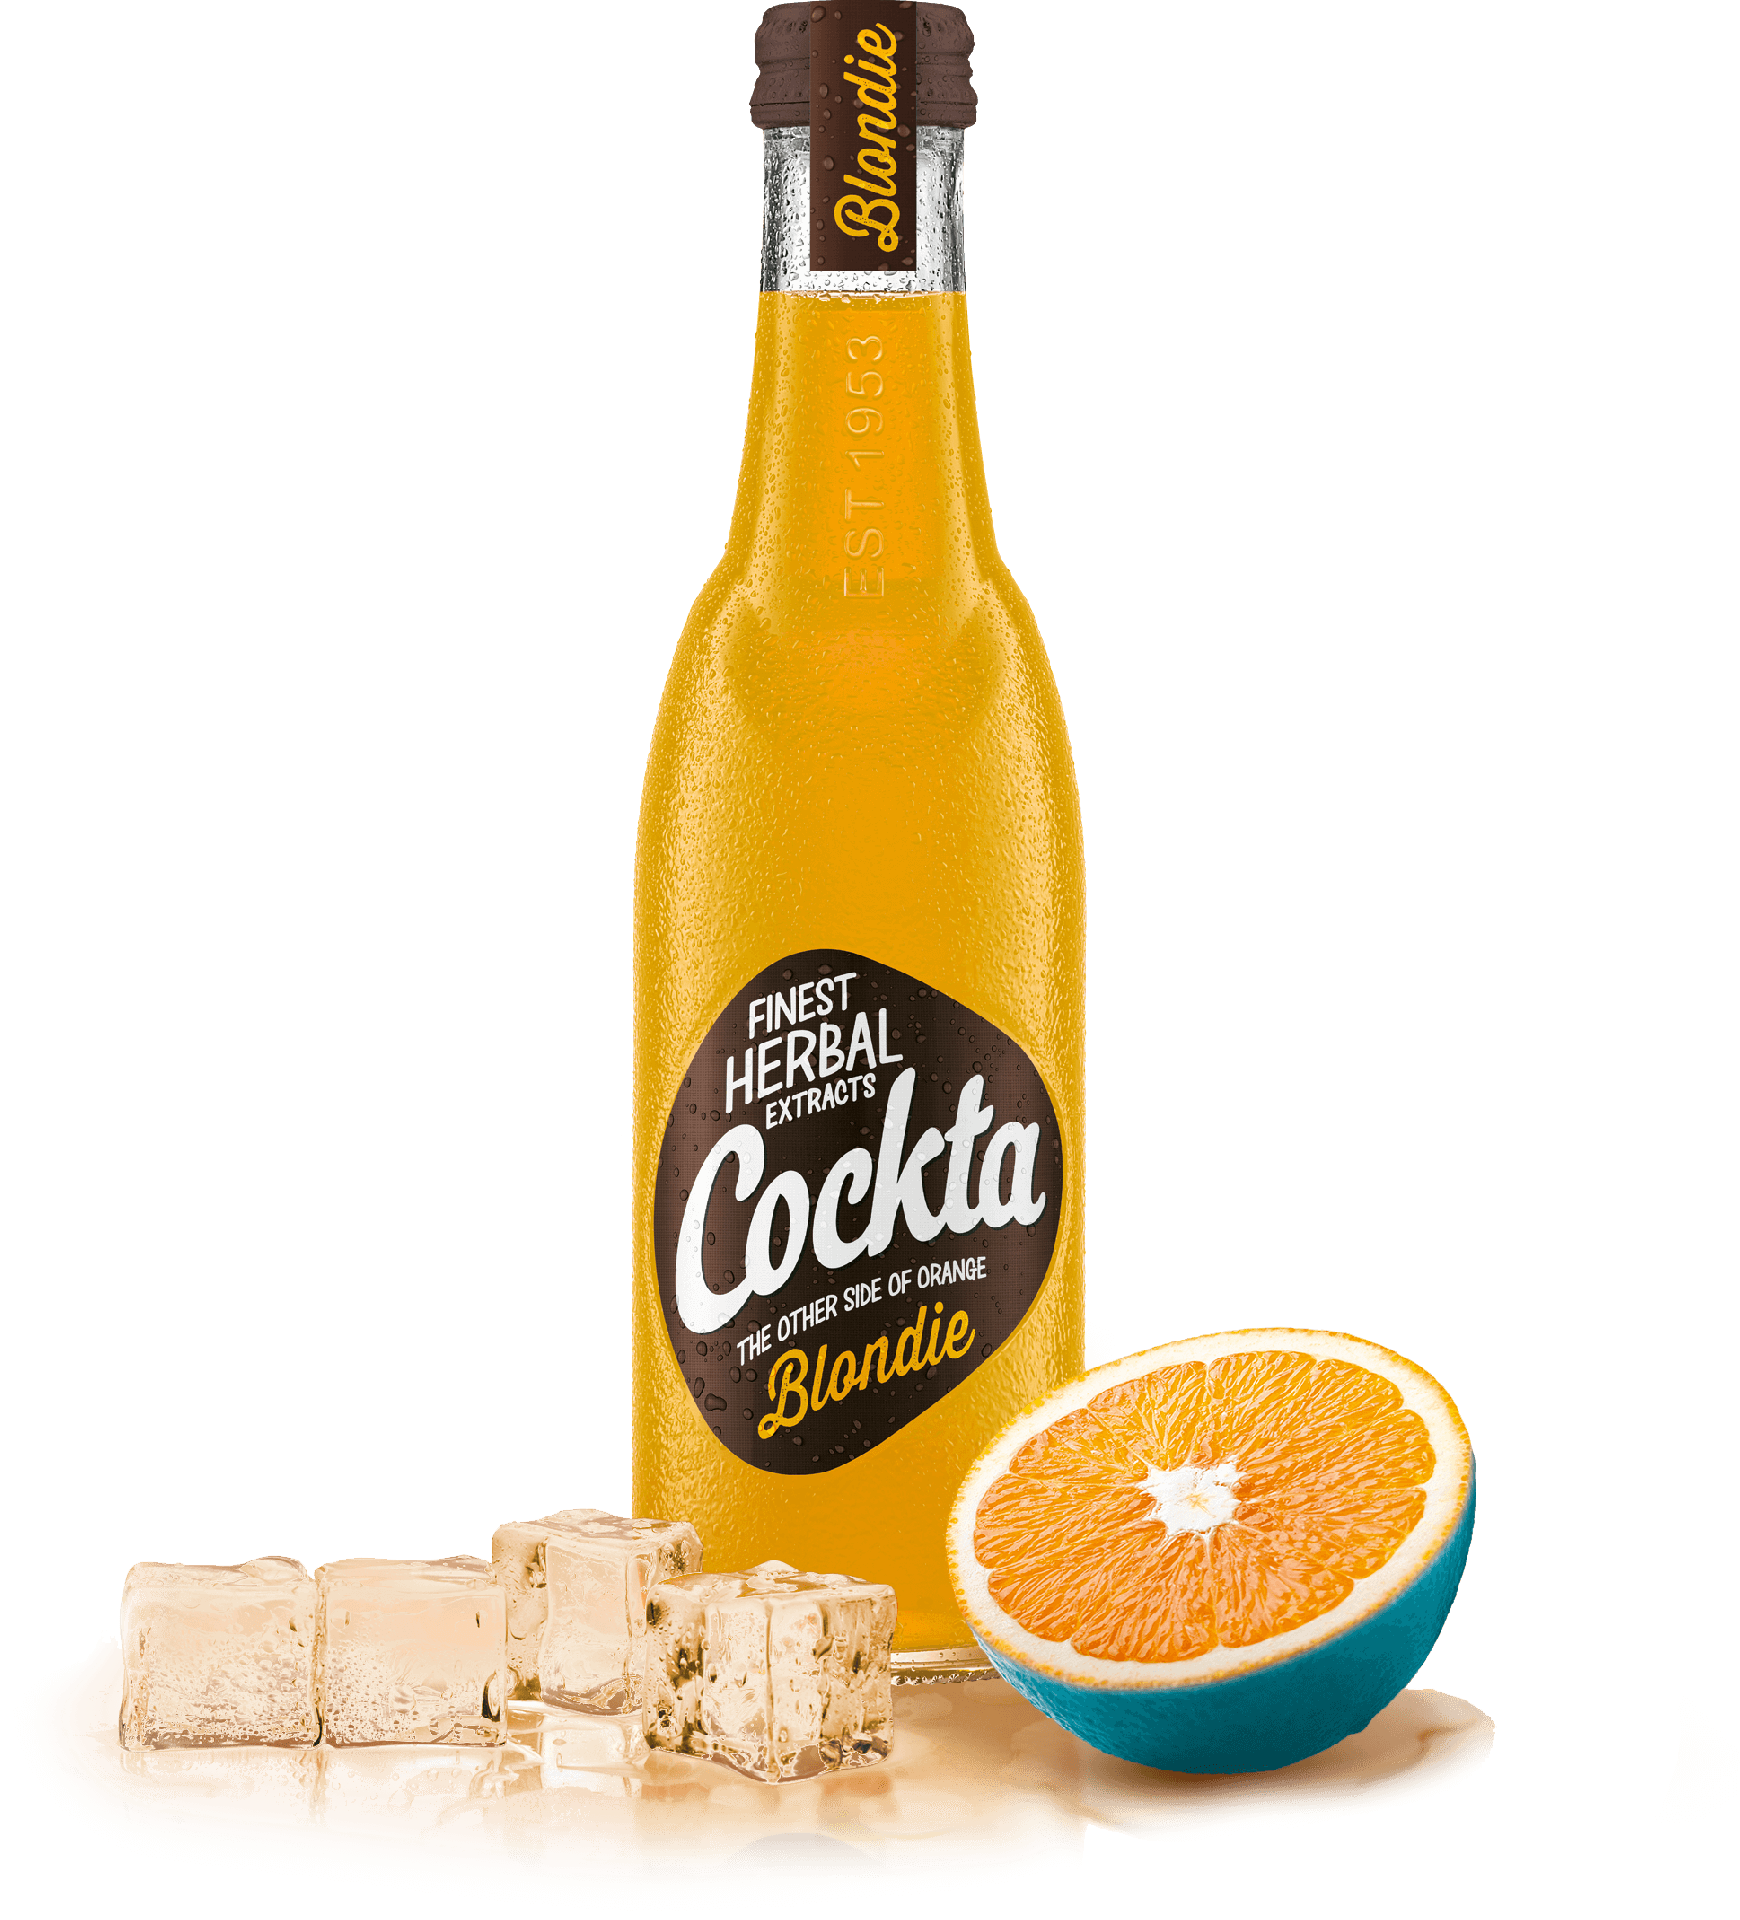 CocktaBlondie

Druga strana
narandže

